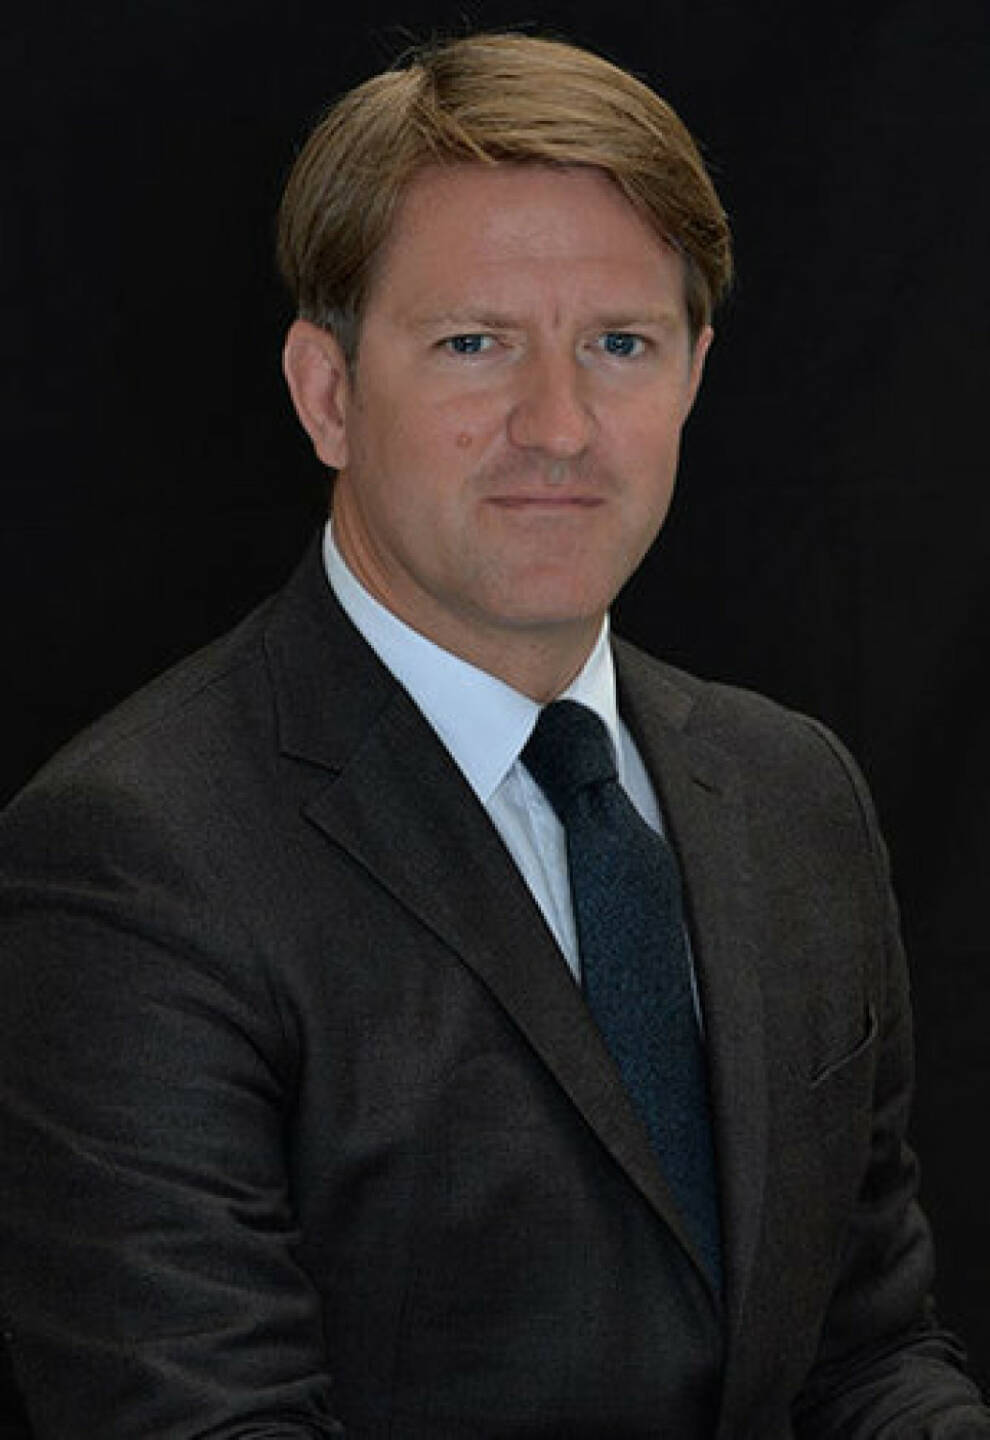 Igor de Maack, Fondsmanager und Sprecher von DNCA, einer Tochtergesellschaft von Natixis Investment Managers; Bildquelle: DNCA Finance